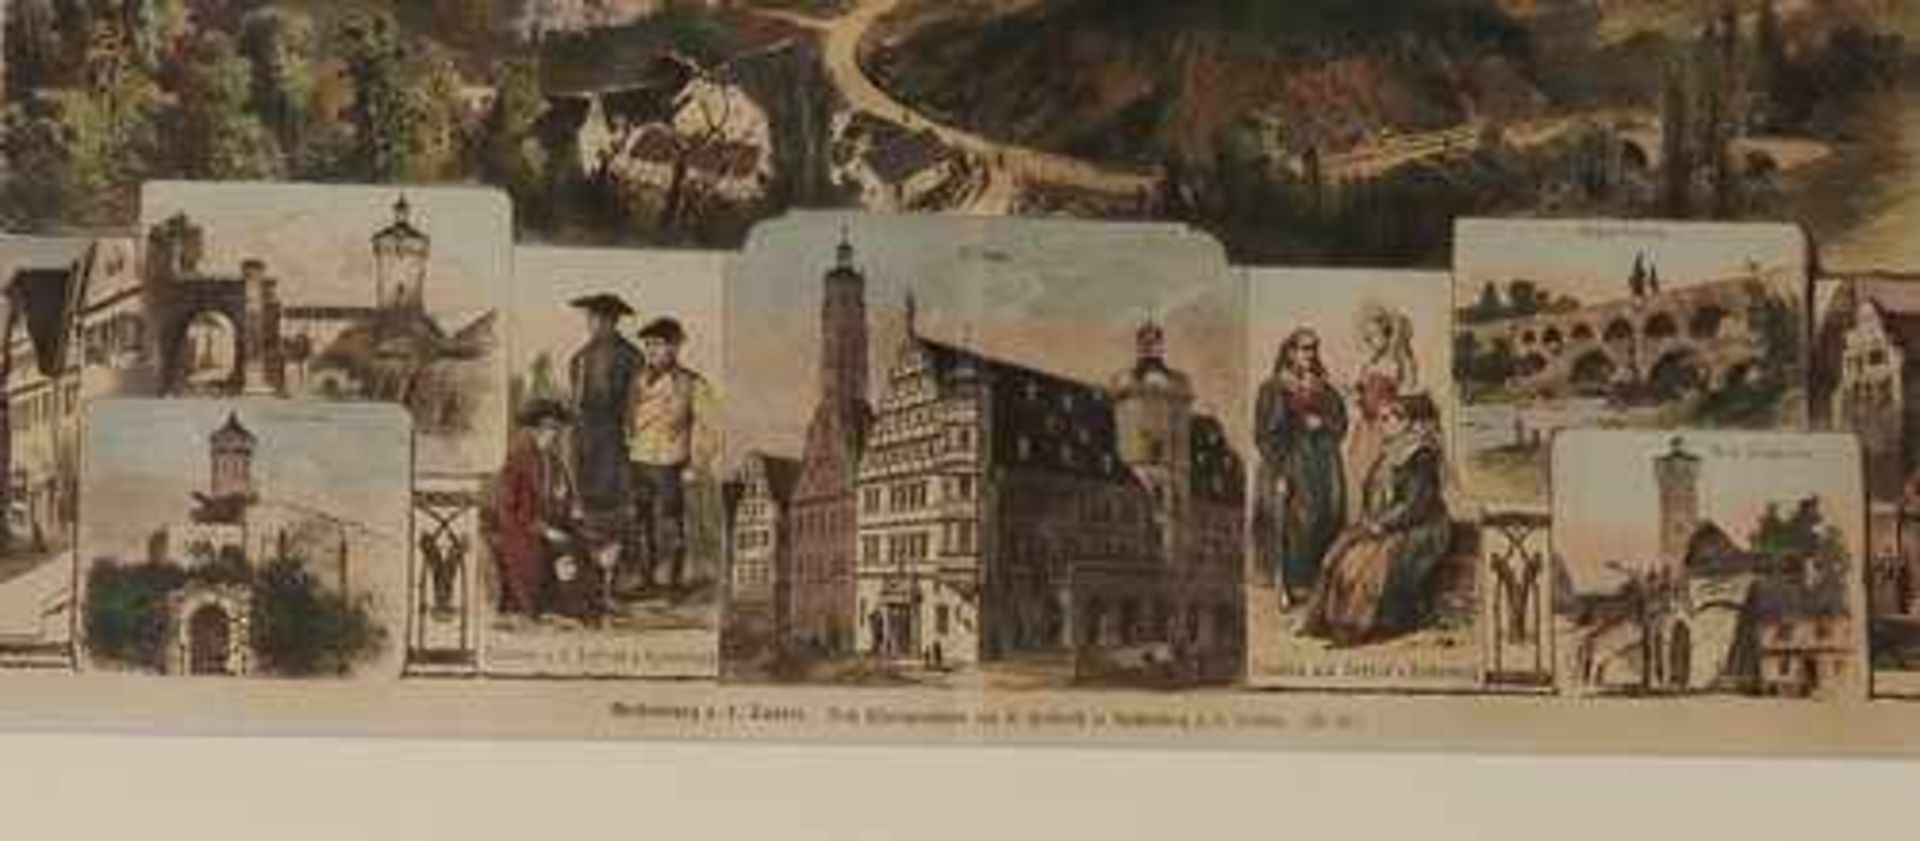 Rothenburg o.T. - Ansicht im Zentrum eine Gesamtansicht der Stadt, umgeben von Teilansichten, je - Bild 2 aus 4